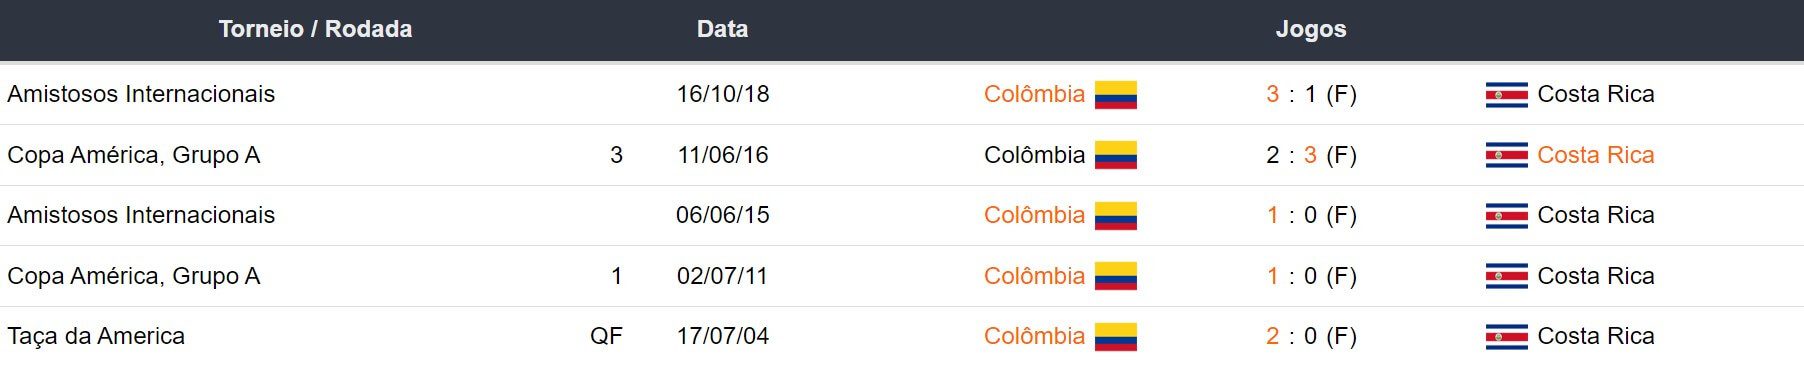 Ultimos encontros Colômbia x Costa Rica 170424